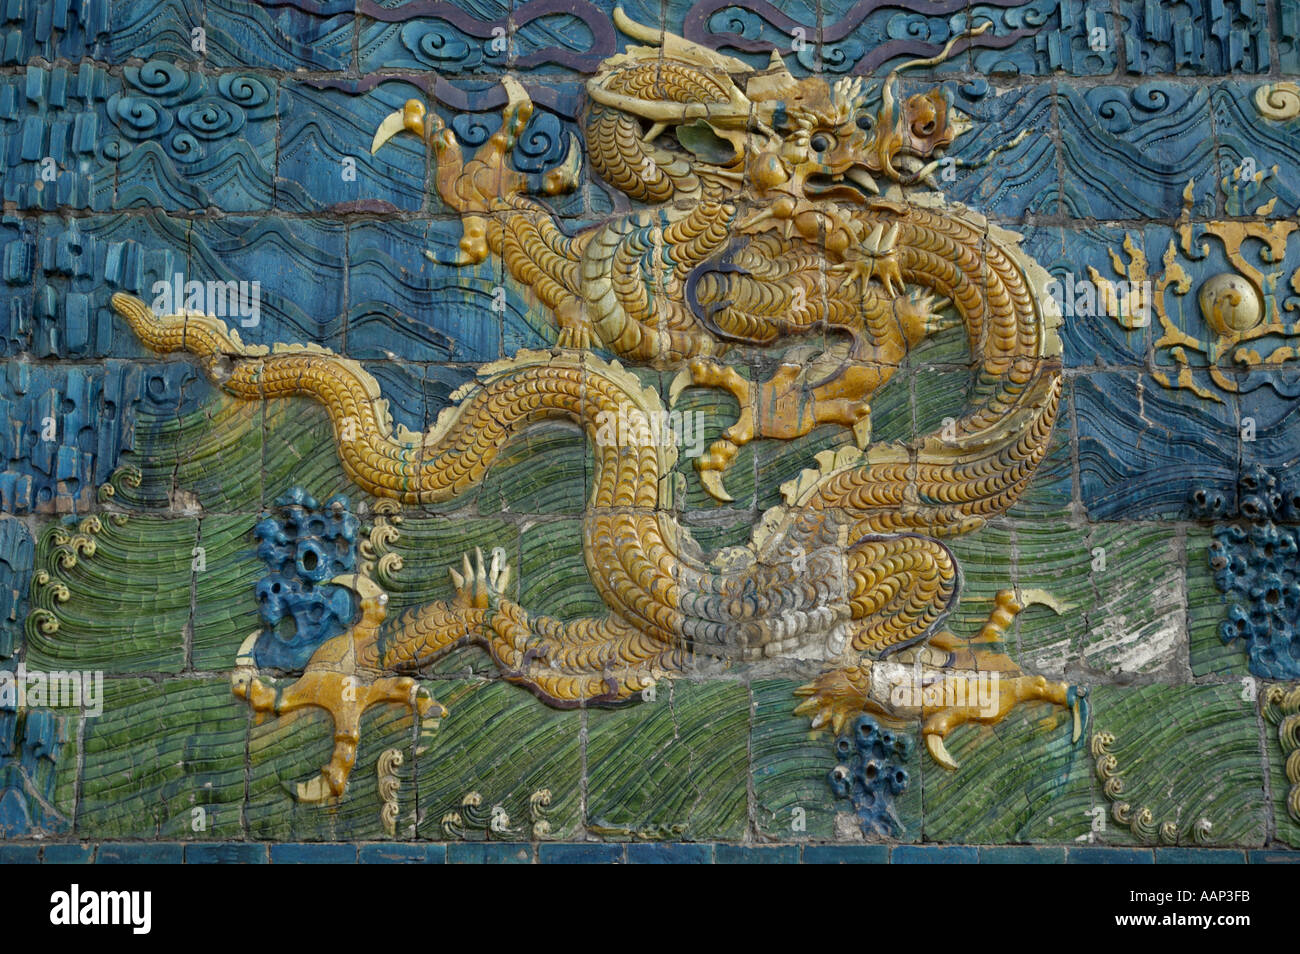 Reich verzierte und dekorative Chinesische Drachen malen auf die Neun Drachen in Datong, Shanxi, China. Stockfoto